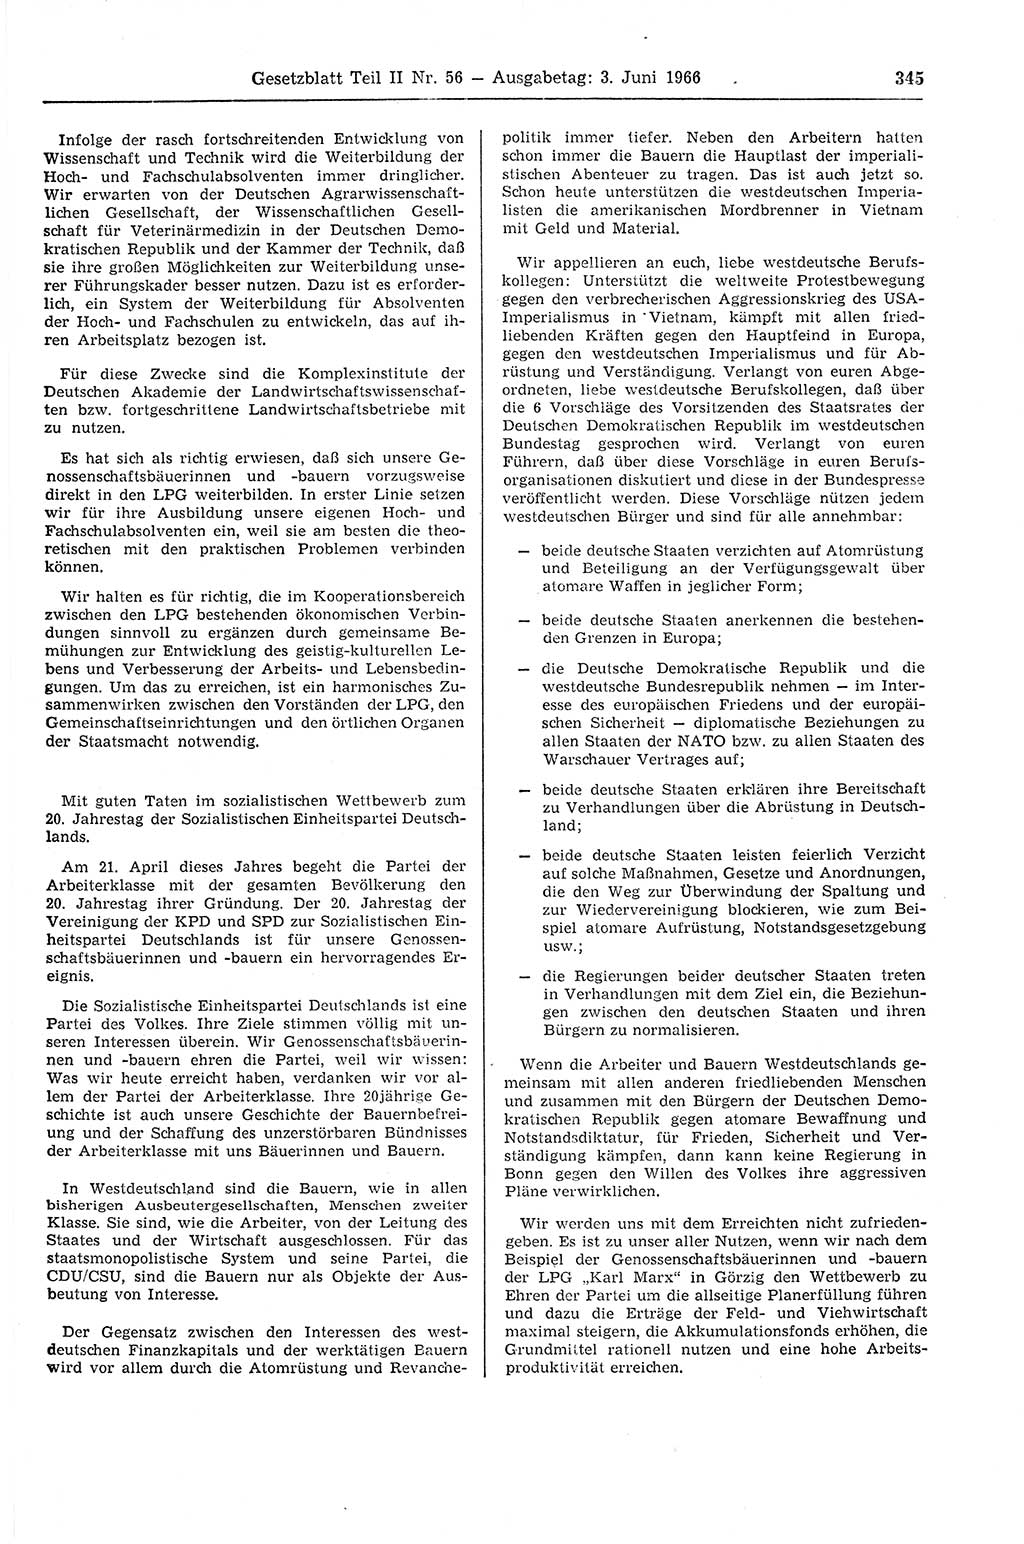 Gesetzblatt (GBl.) der Deutschen Demokratischen Republik (DDR) Teil ⅠⅠ 1966, Seite 345 (GBl. DDR ⅠⅠ 1966, S. 345)